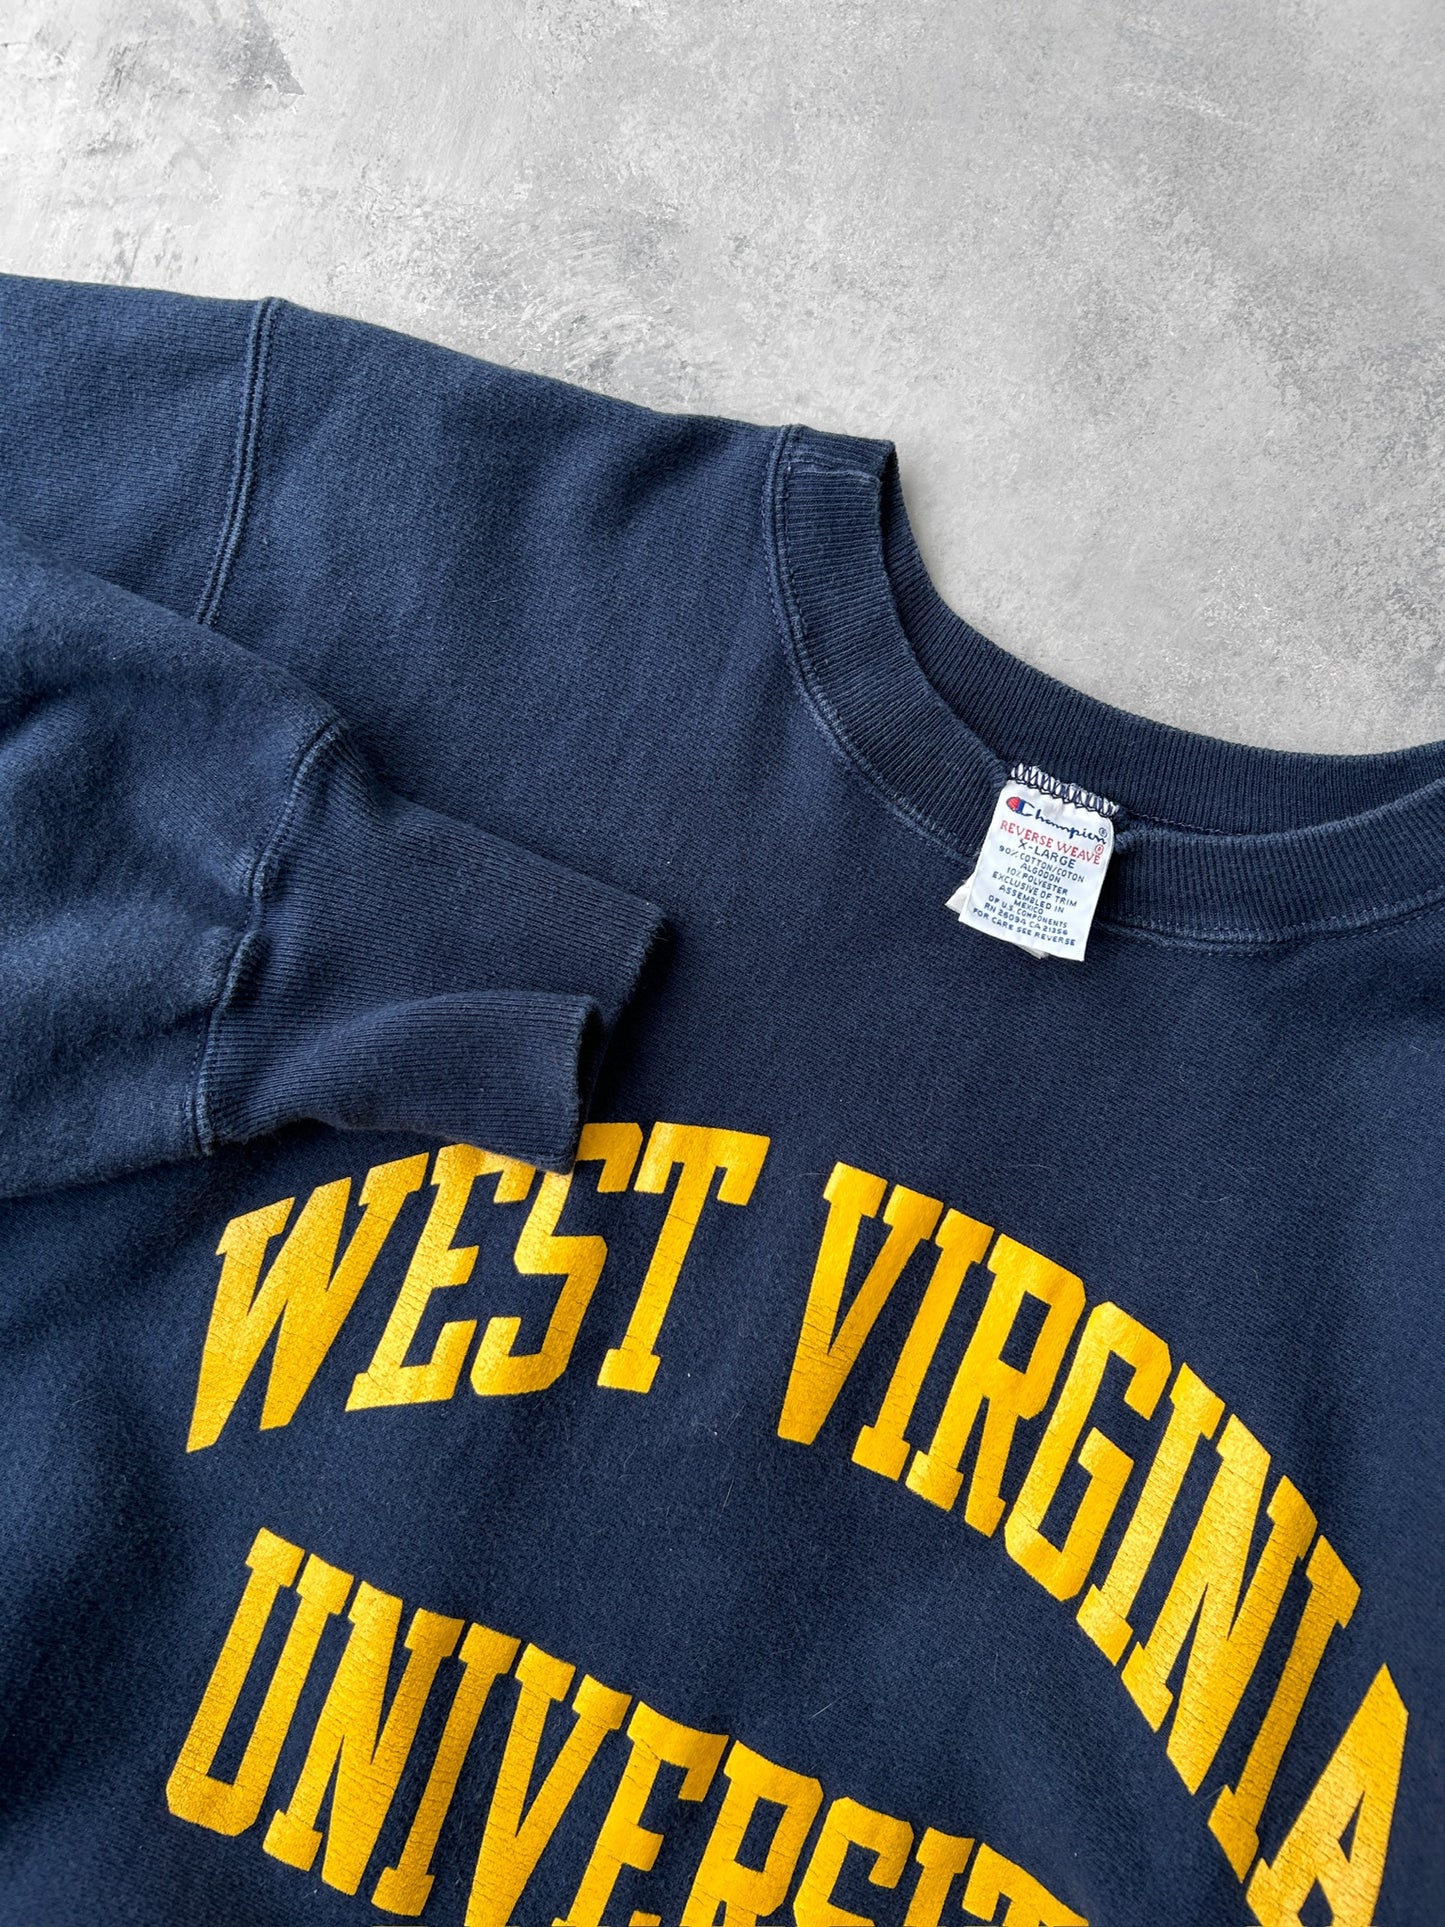 West Virginia University Sweatshirt 90's - XL